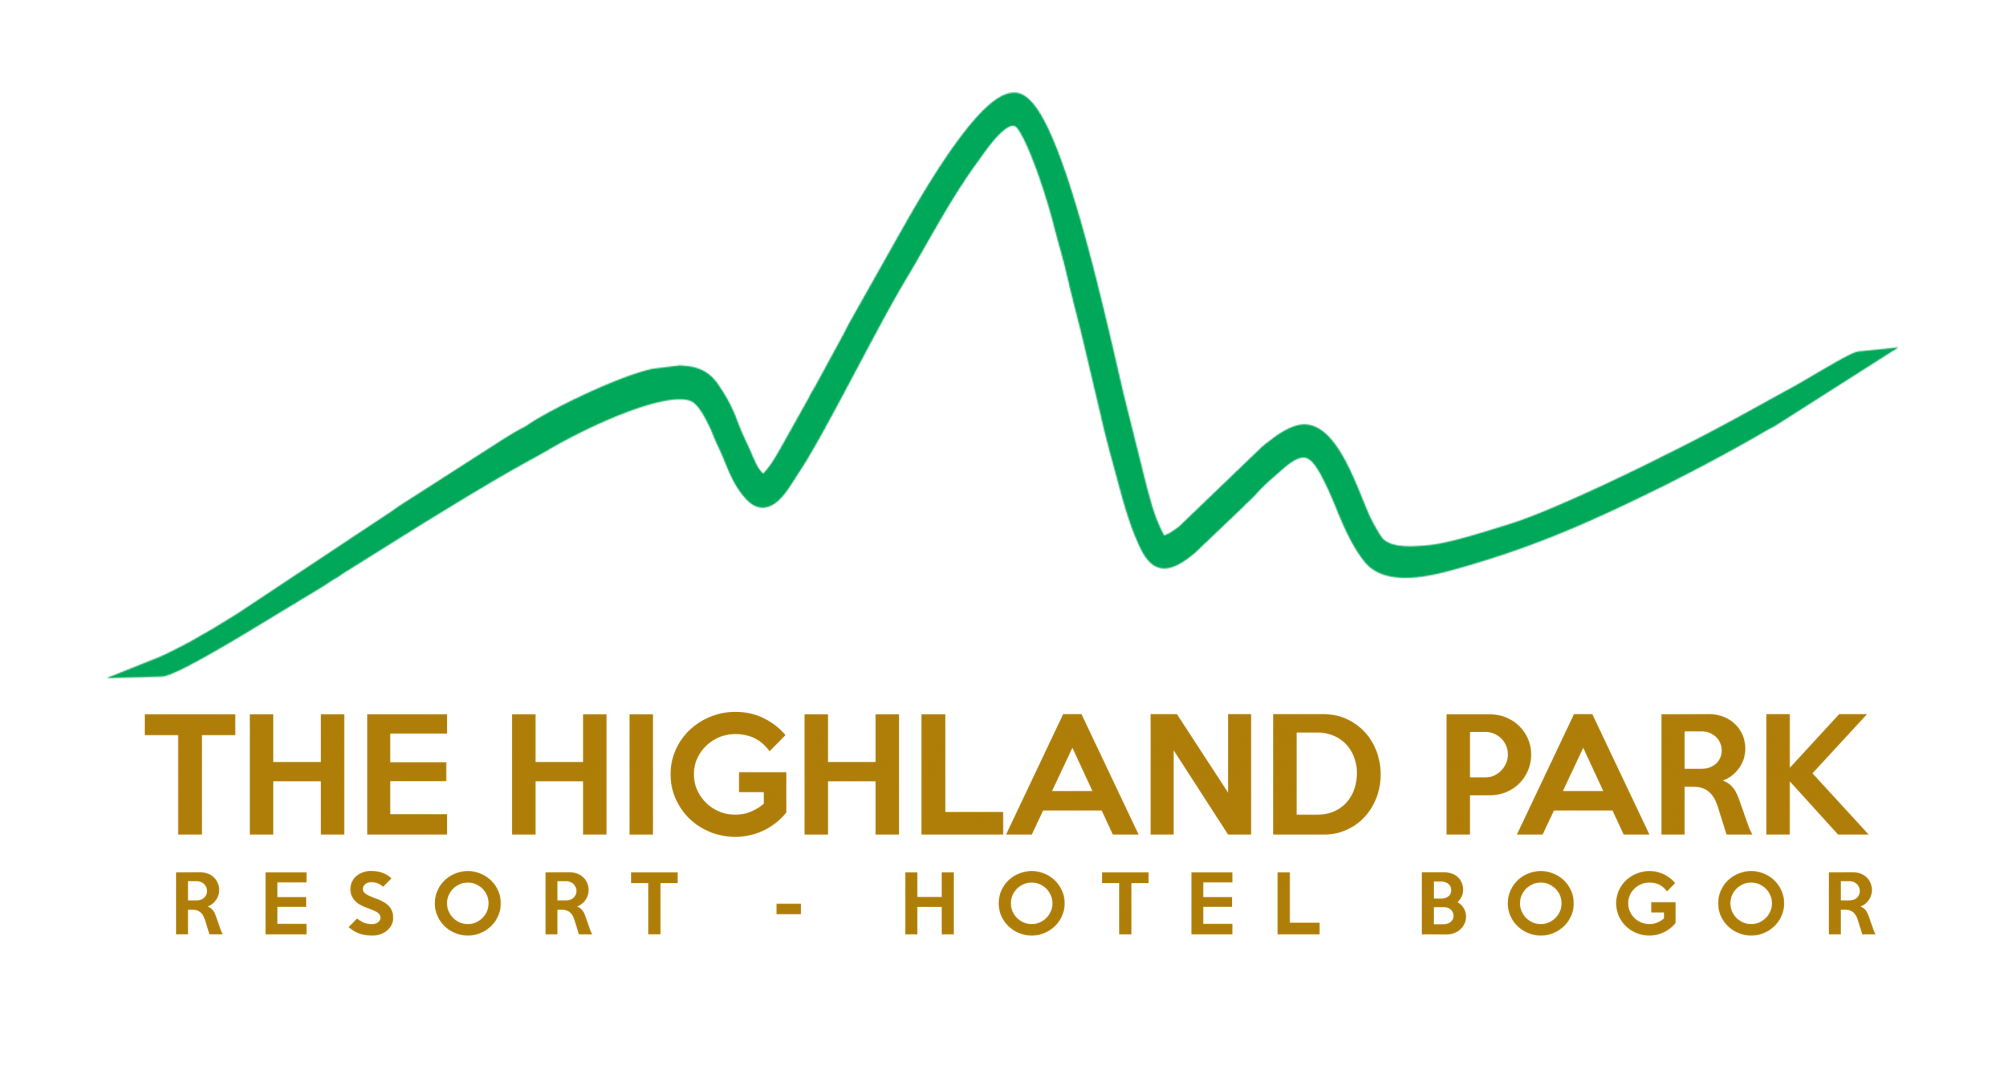 The Highland Park Resort & Hotel Bogor